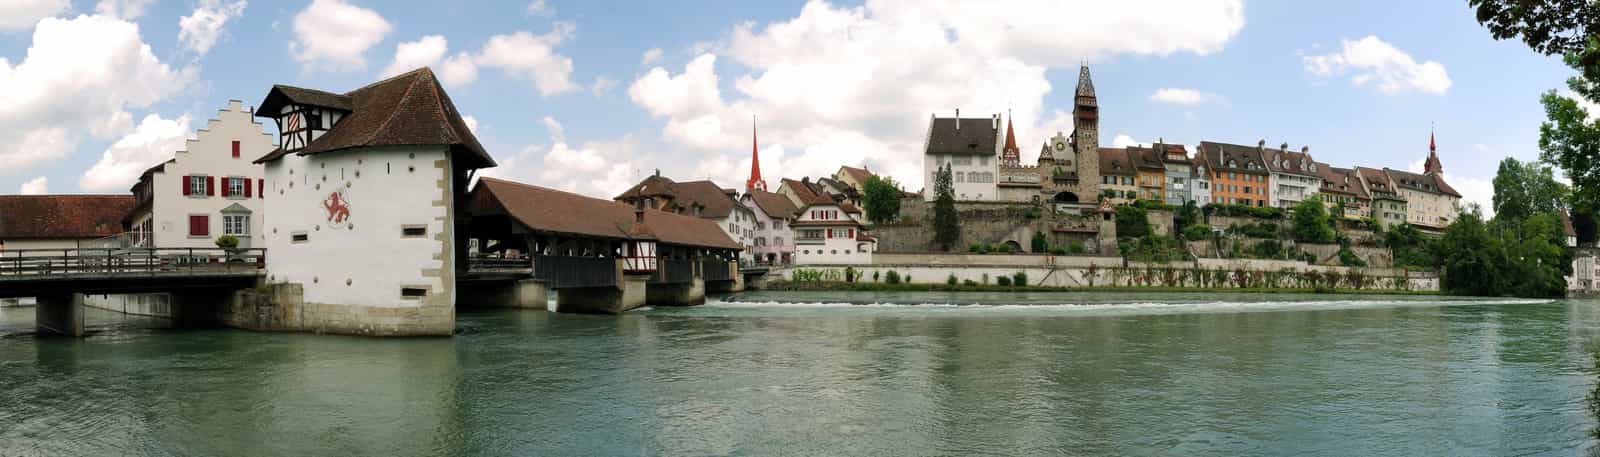 Ansicht von Bremgarten: Holzbrücke über die Reuss, Kirchturmspitze der Stadtkirche